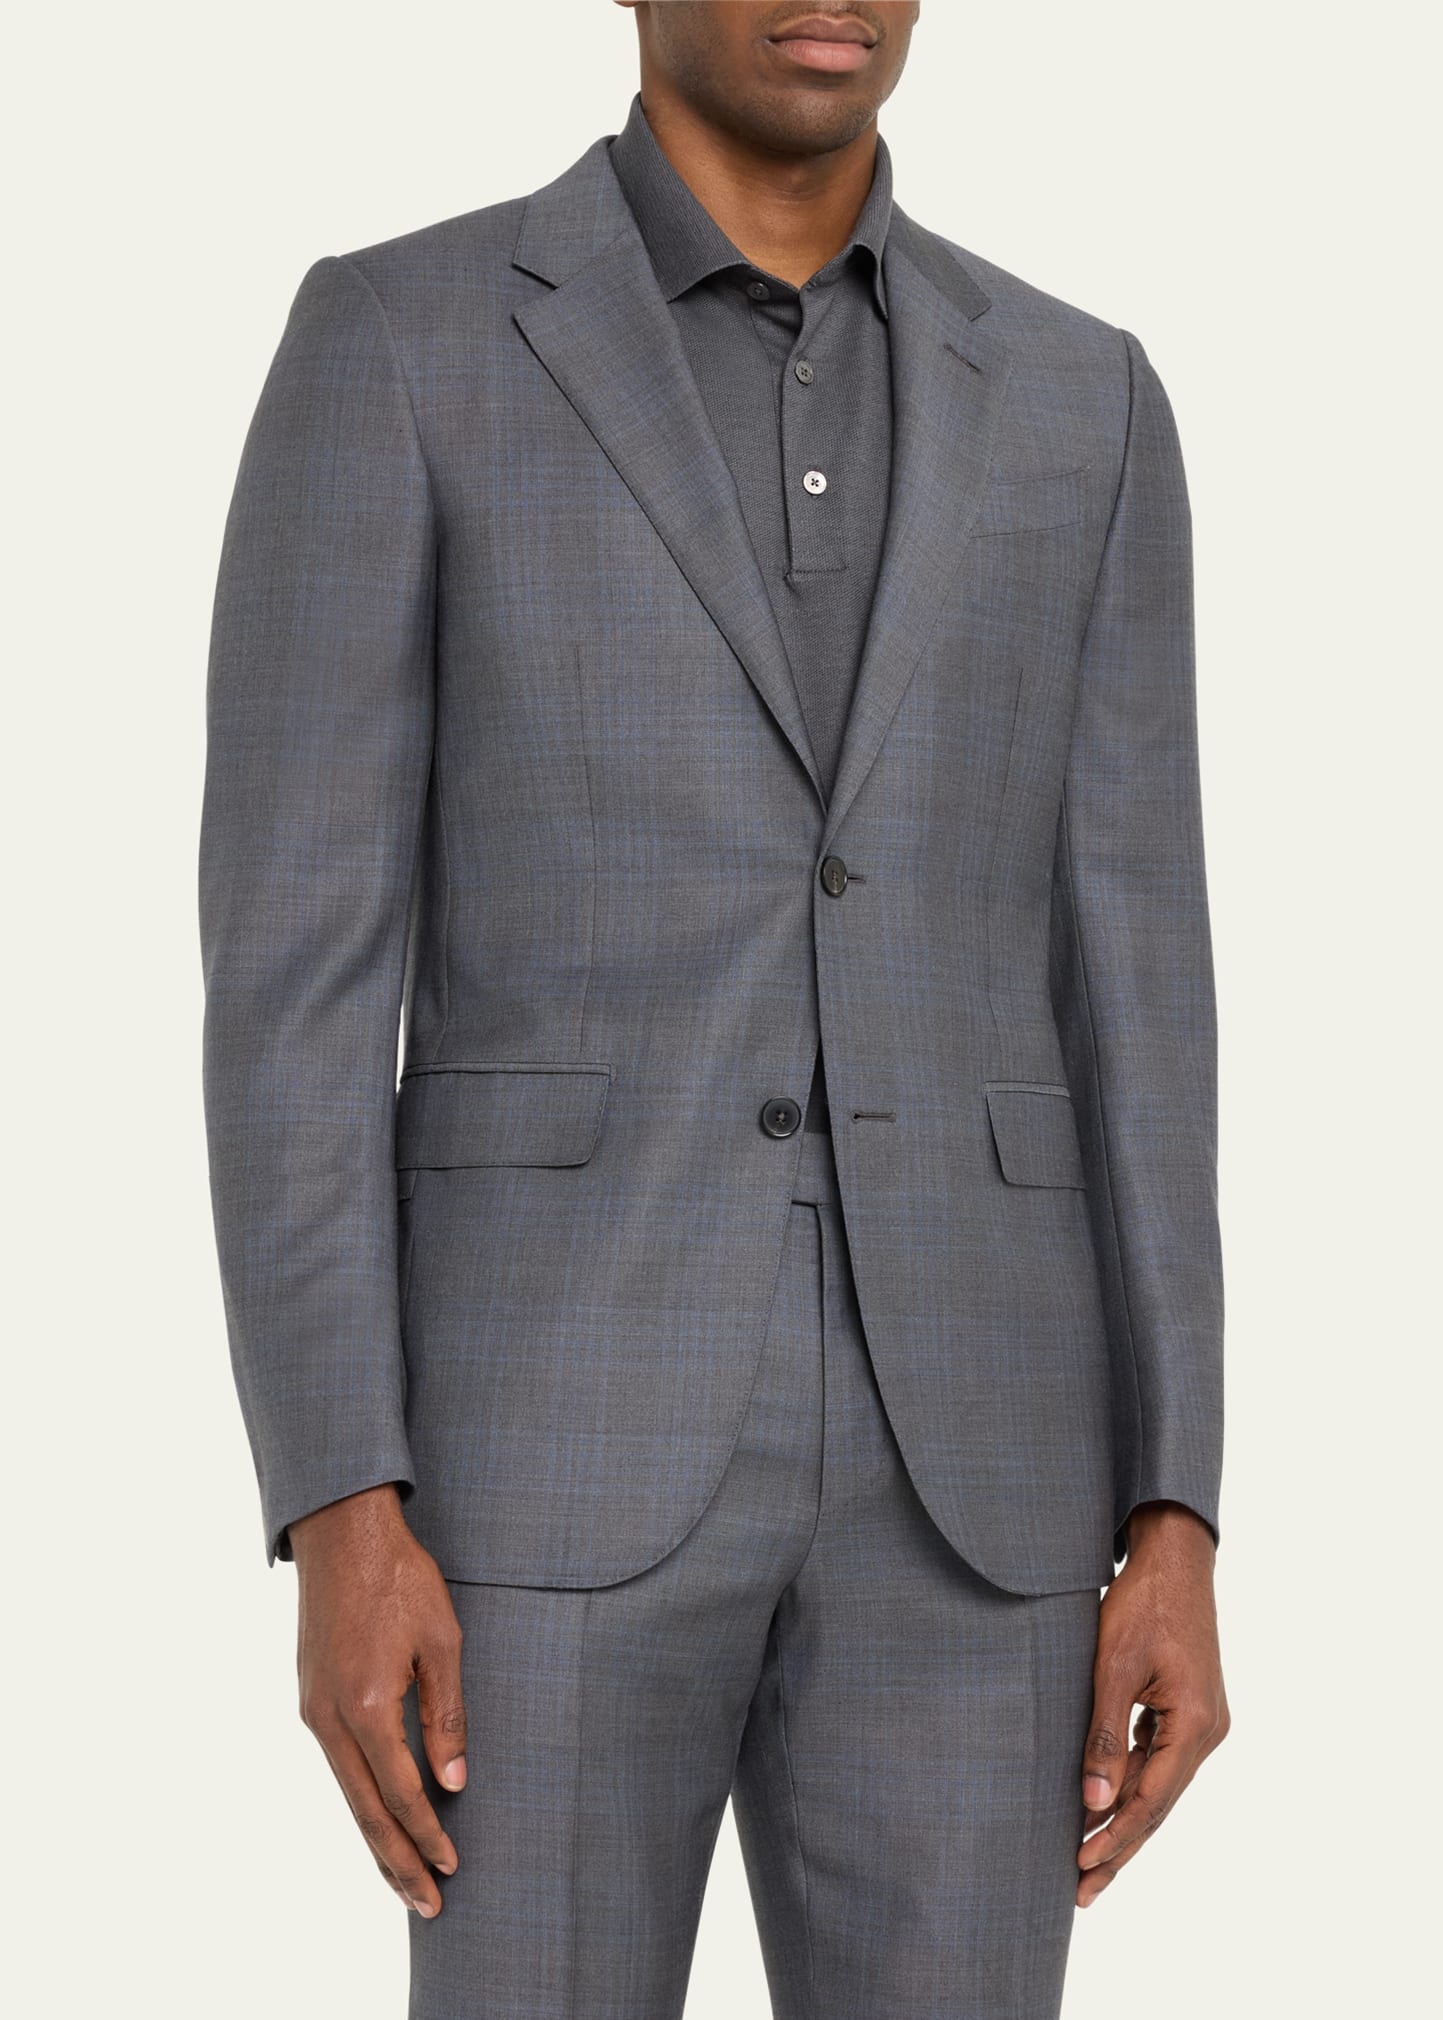 Men's Two-Tone Plaid Wool Suit - 4